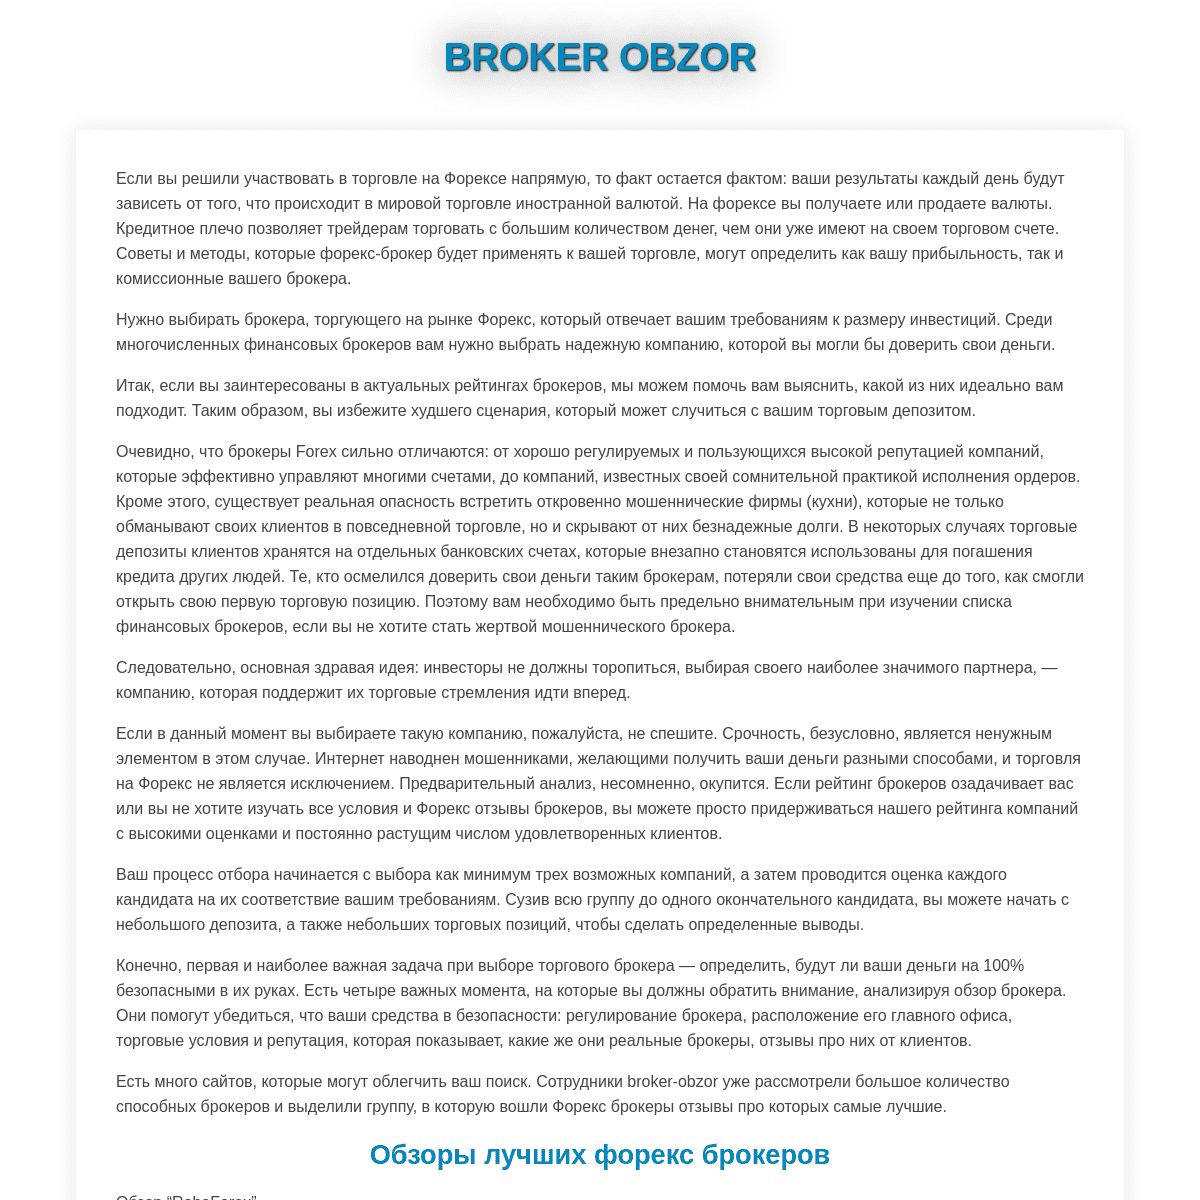 A complete backup of https://broker-obzor.com